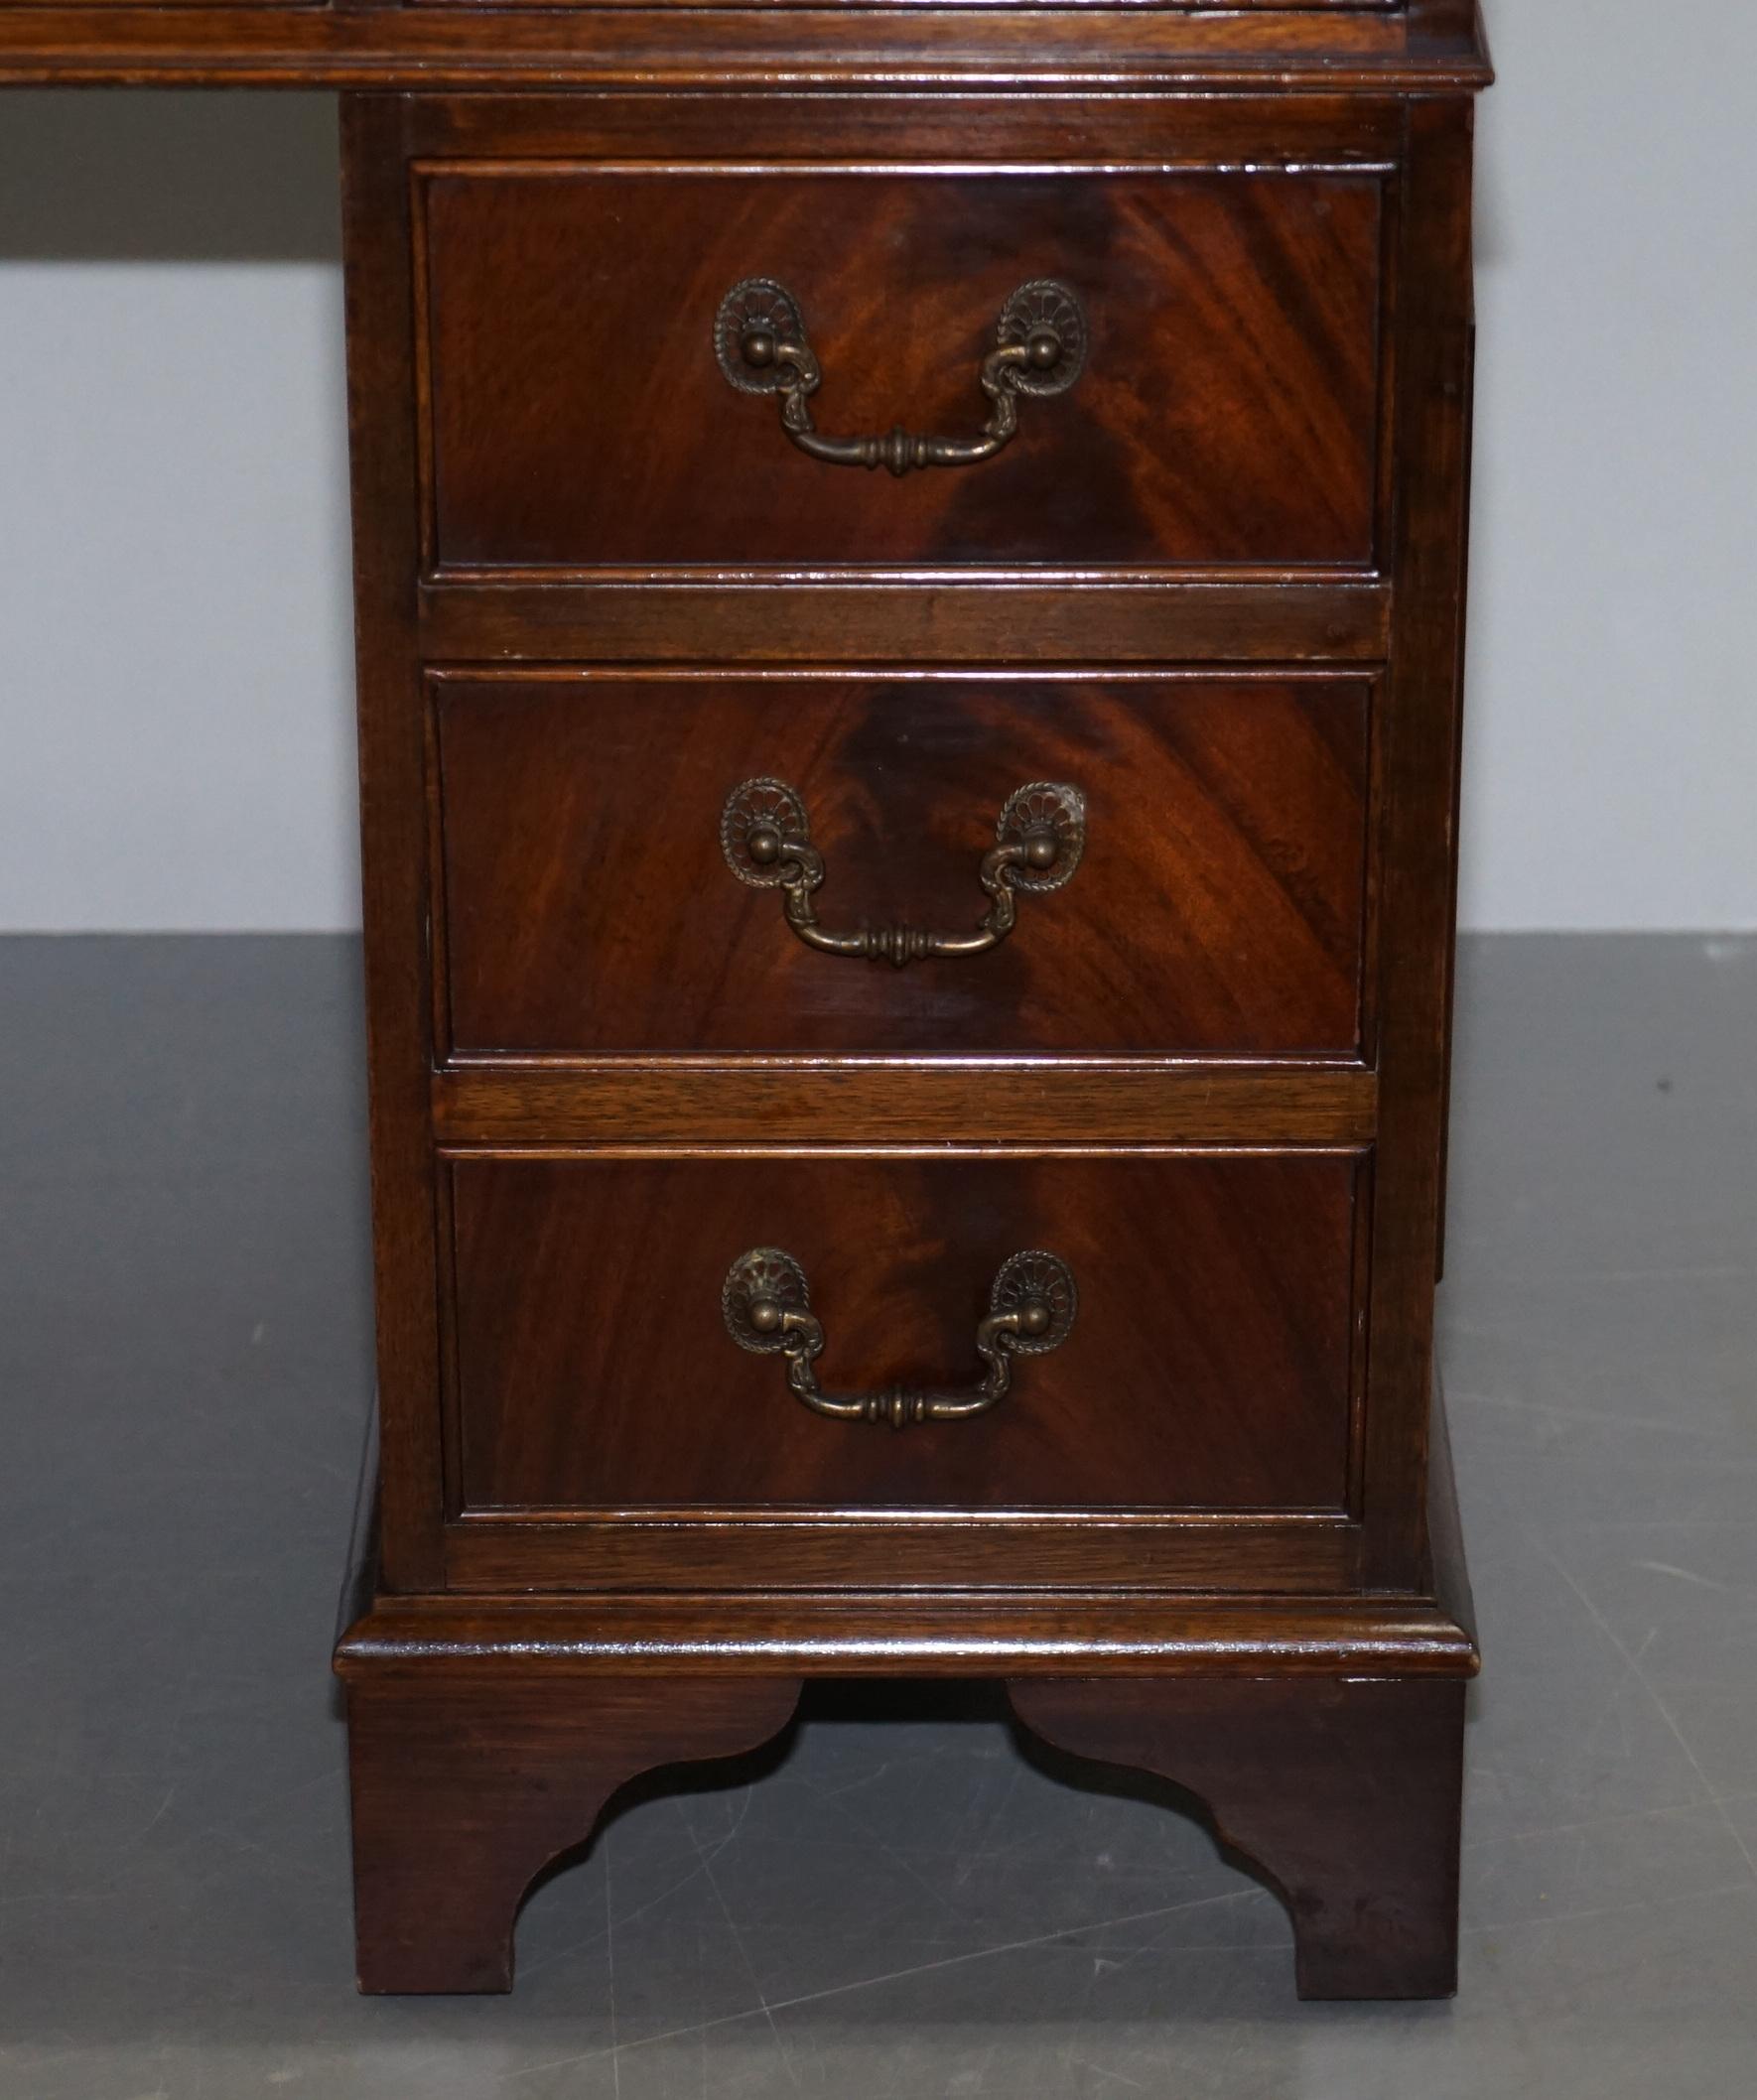 Vintage Hardwood Twin Pedestal Partner Desk With Distressed Brown Leather Top 2